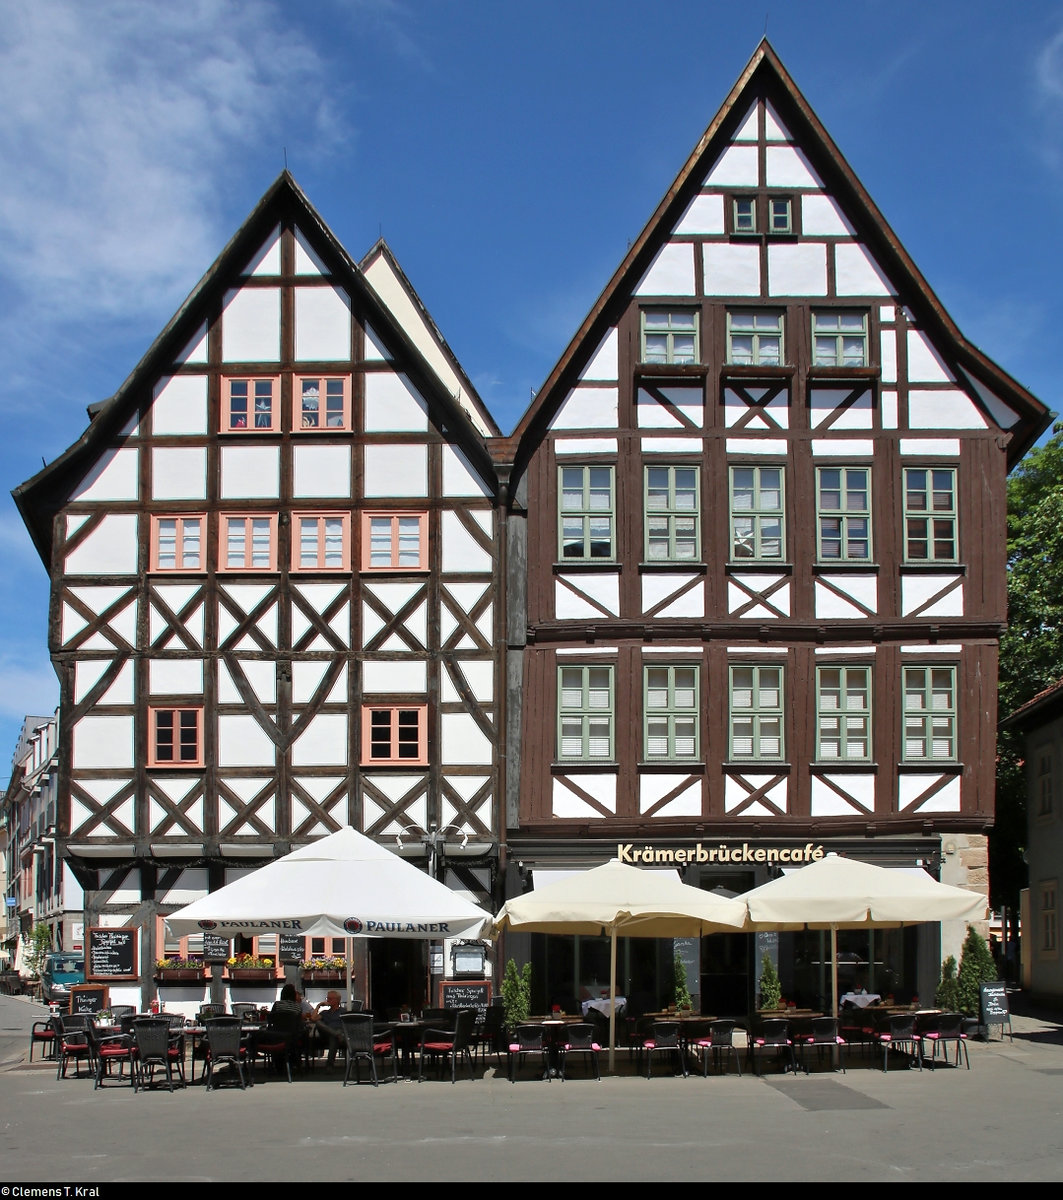 Auf dem Benediktsplatz westlich der Krmerbrcke in Erfurt sind u.a. diese beiden Fachwerkhuser zu sehen, die im Erdgeschoss jeweils als Caf bzw. Restaurant genutzt werden.
[3.6.2019 | 12:16 Uhr]